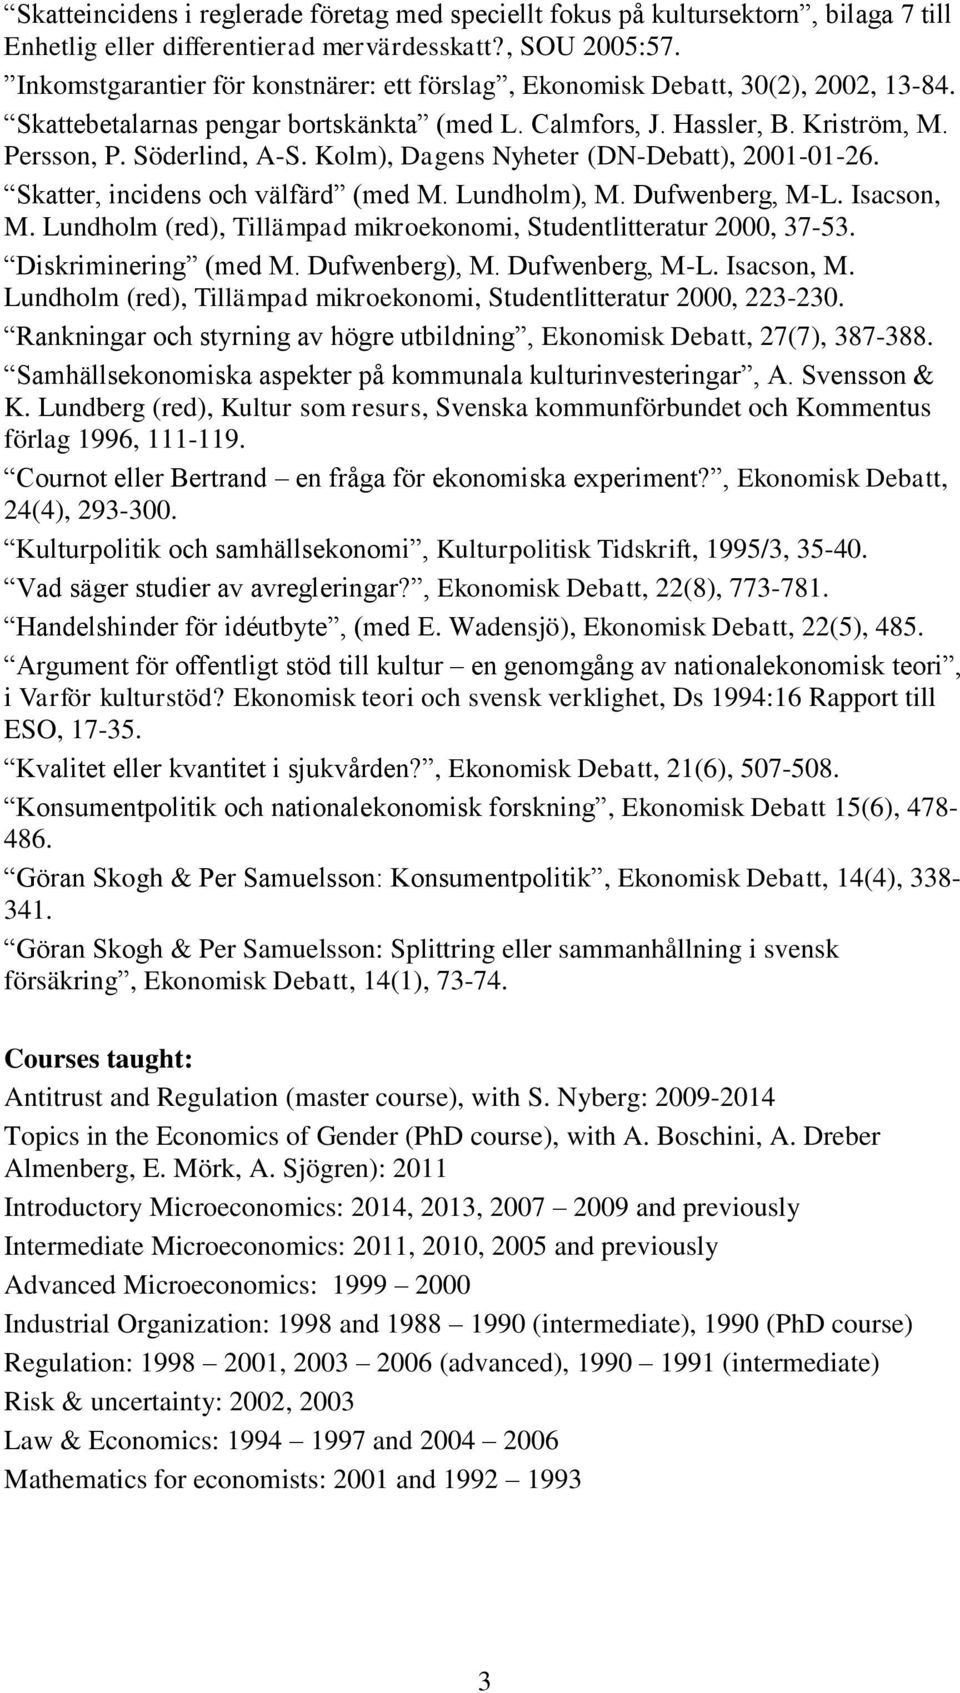 Kolm), Dagens Nyheter (DN-Debatt), 2001-01-26. Skatter, incidens och välfärd (med M. Lundholm), M. Dufwenberg, M-L. Isacson, M. Lundholm (red), Tillämpad mikroekonomi, Studentlitteratur 2000, 37-53.